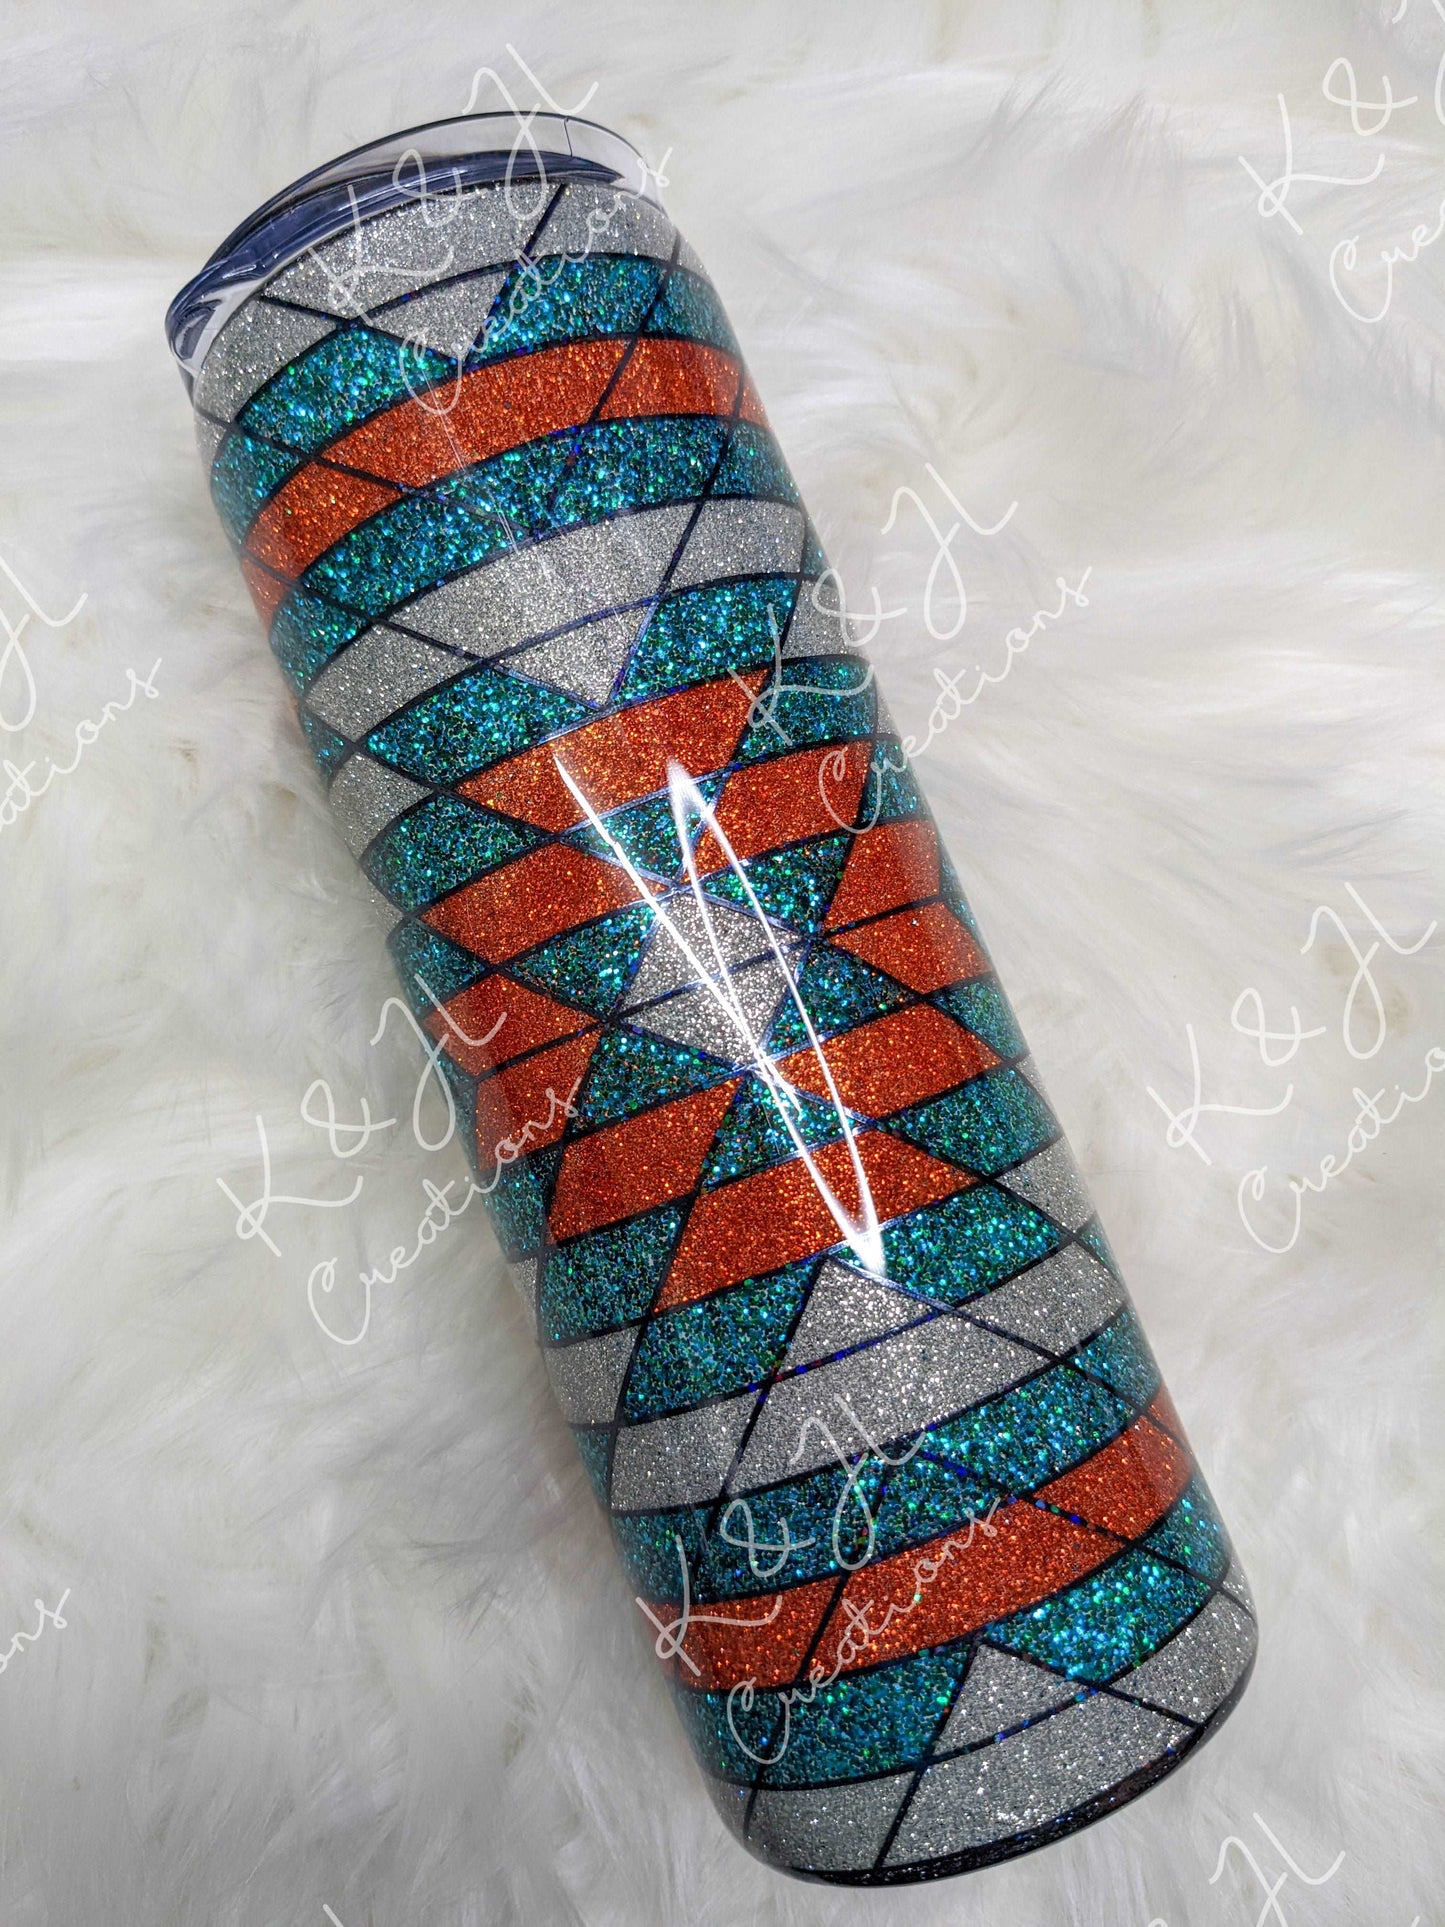 20 oz. Southwestern Style Glitter Tumbler, Teal, Orange and Silver Glitter, Geometric Design, Gift for her, Handmade Glitter Tumbler